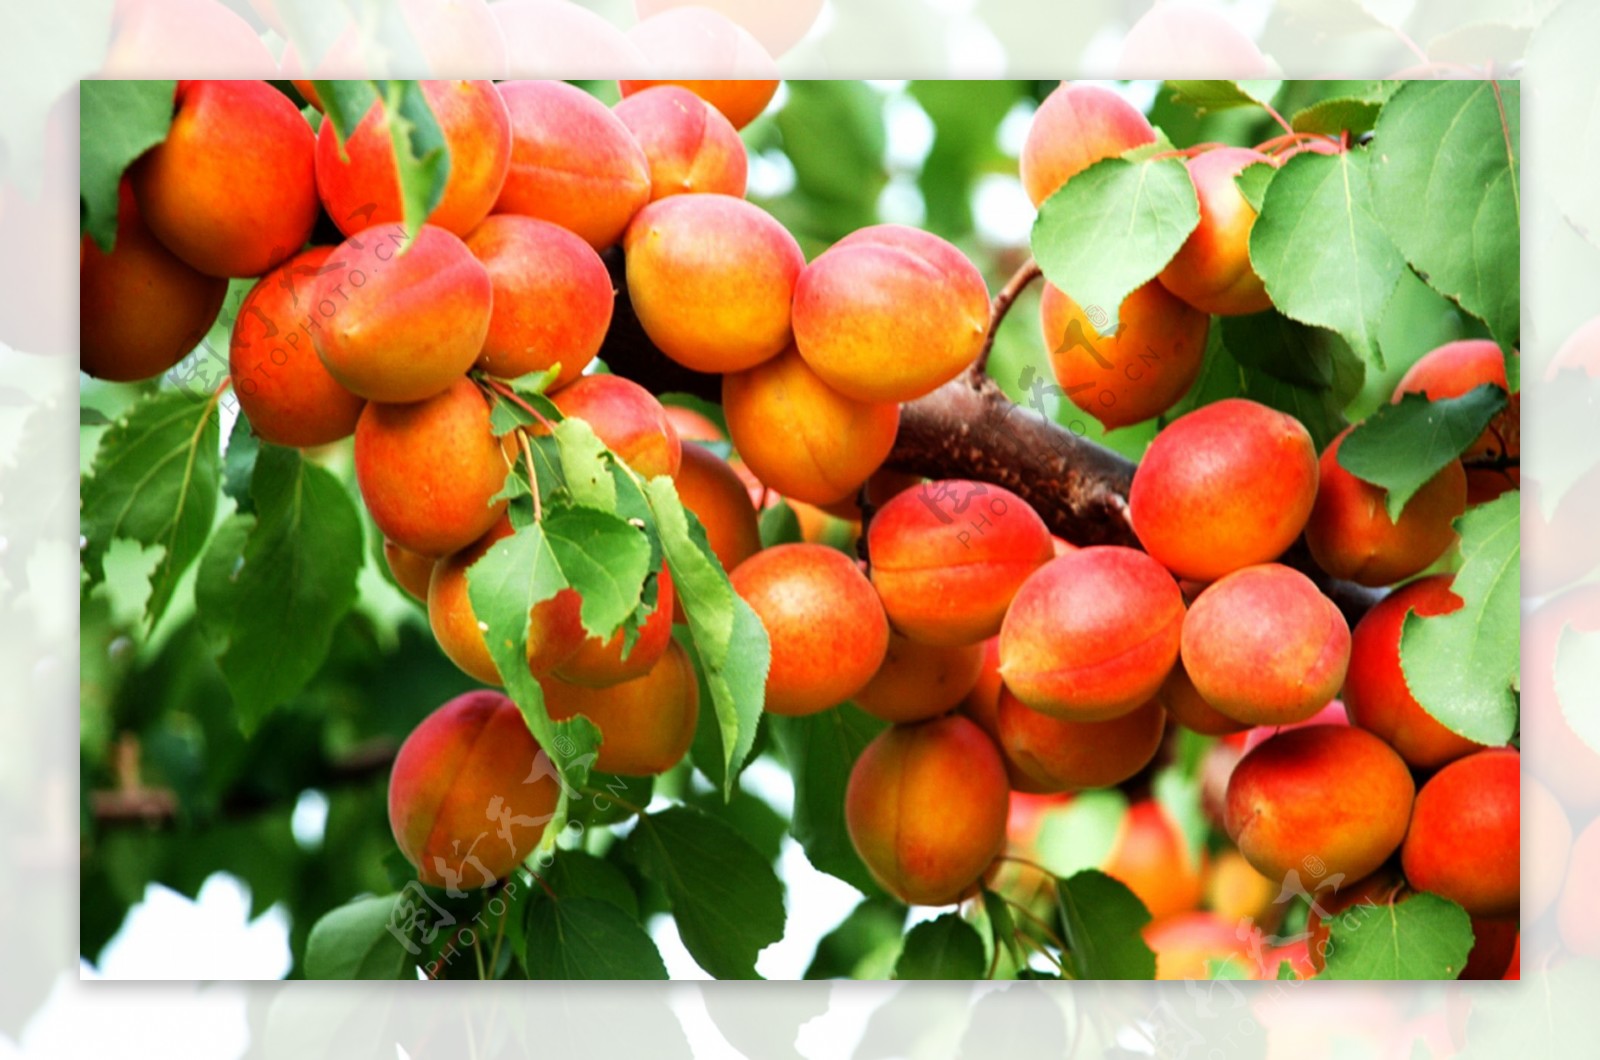 杏子树上的绿色杏子 - 免费可商用图片 - CC0素材网